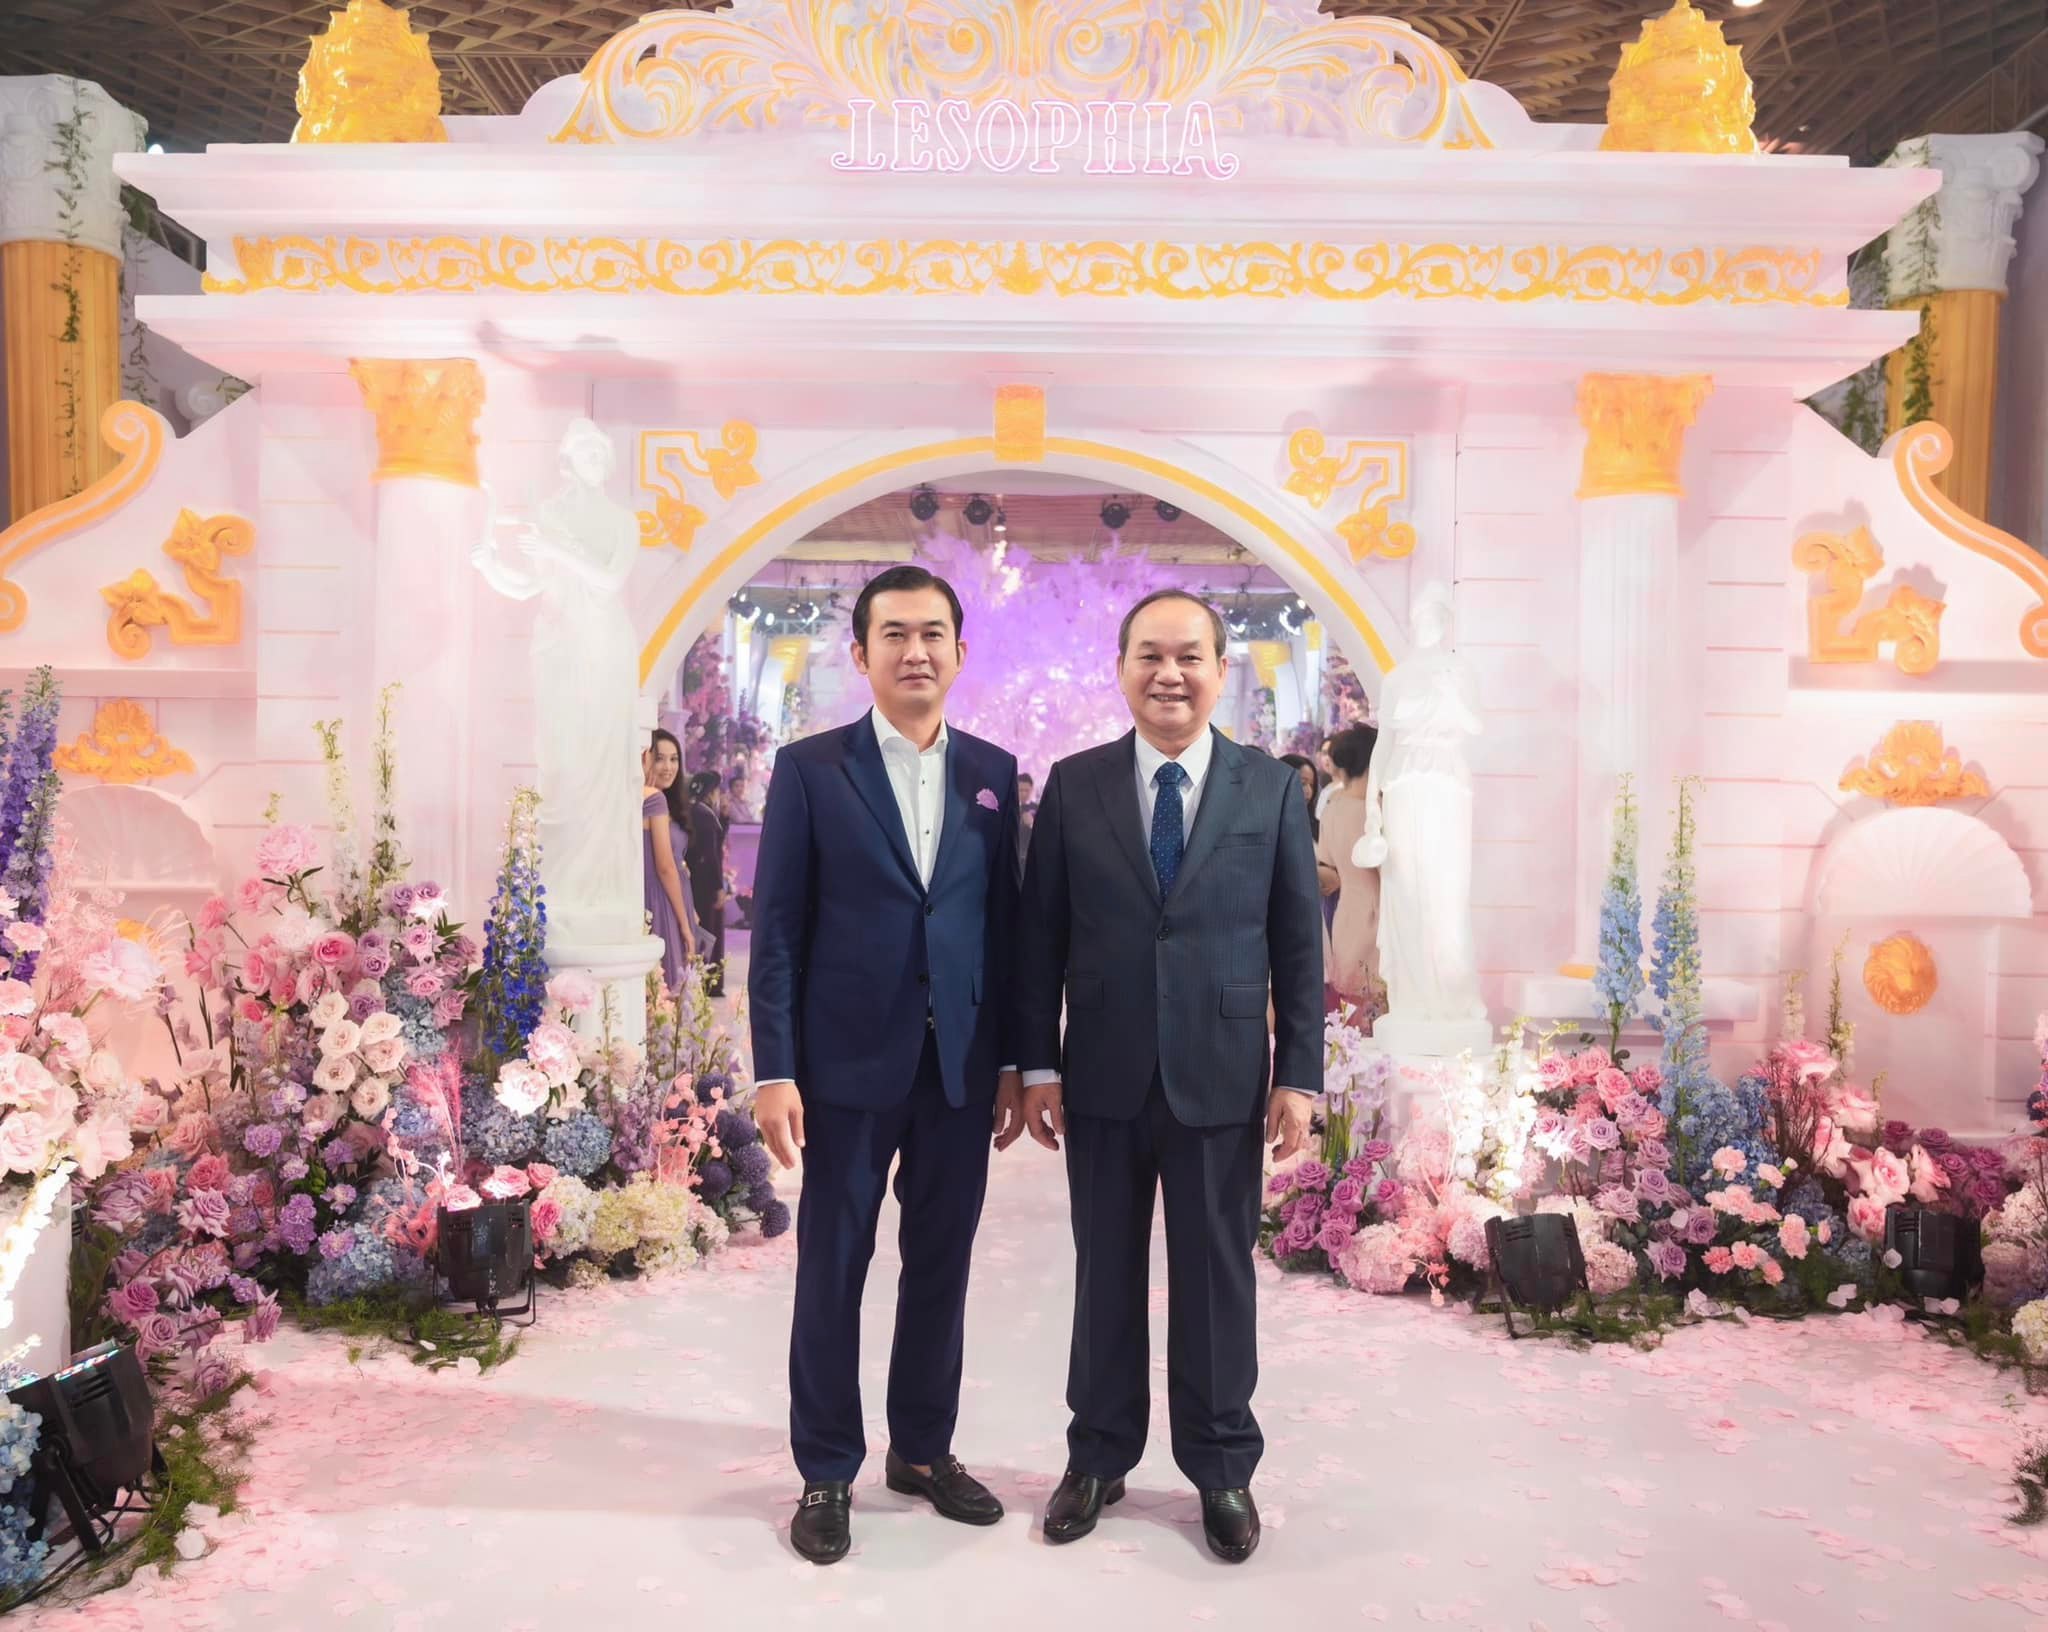 Doanh nhân Nguyễn Việt Cường tặng ‘không gian tiệc cưới hiện đại’ để địa phương quảng bá, khai thác du lịch